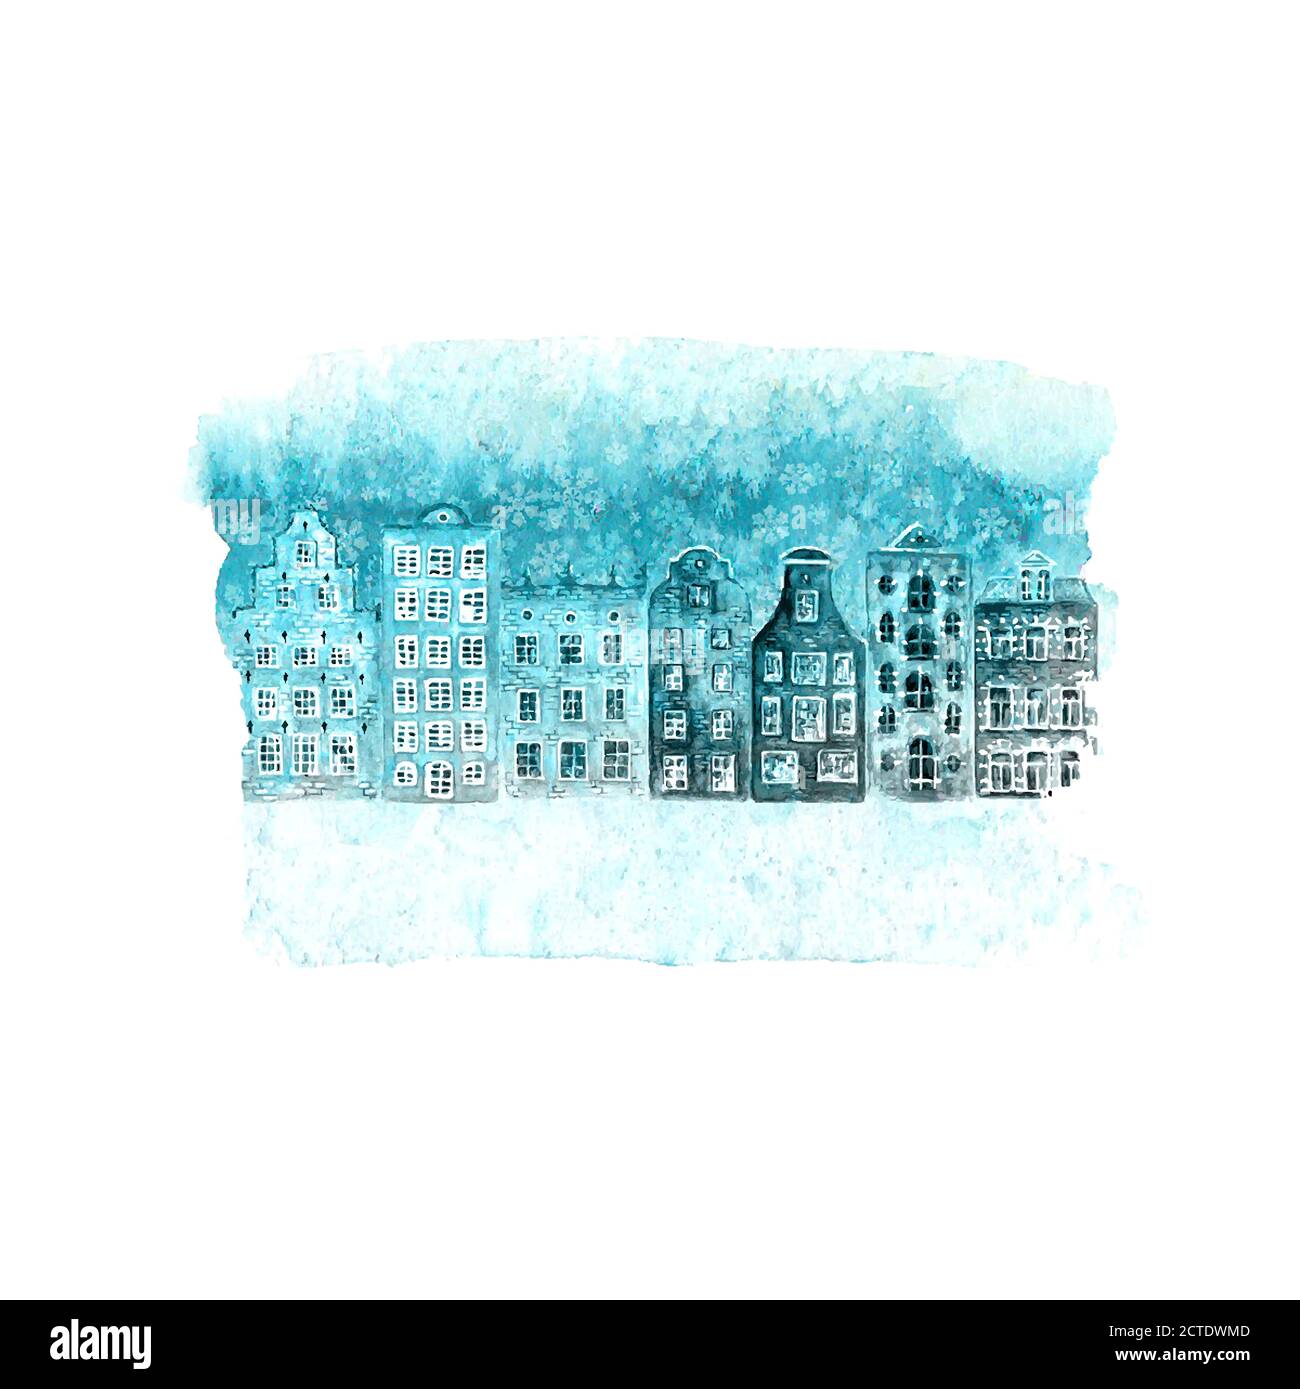 Bonne année et illustration de Noël avec main aquarelle d'hiver dessiné de vieilles maisons européennes et de la neige sur la tache bleue de sarcelle isolé sur fond blanc Illustration de Vecteur